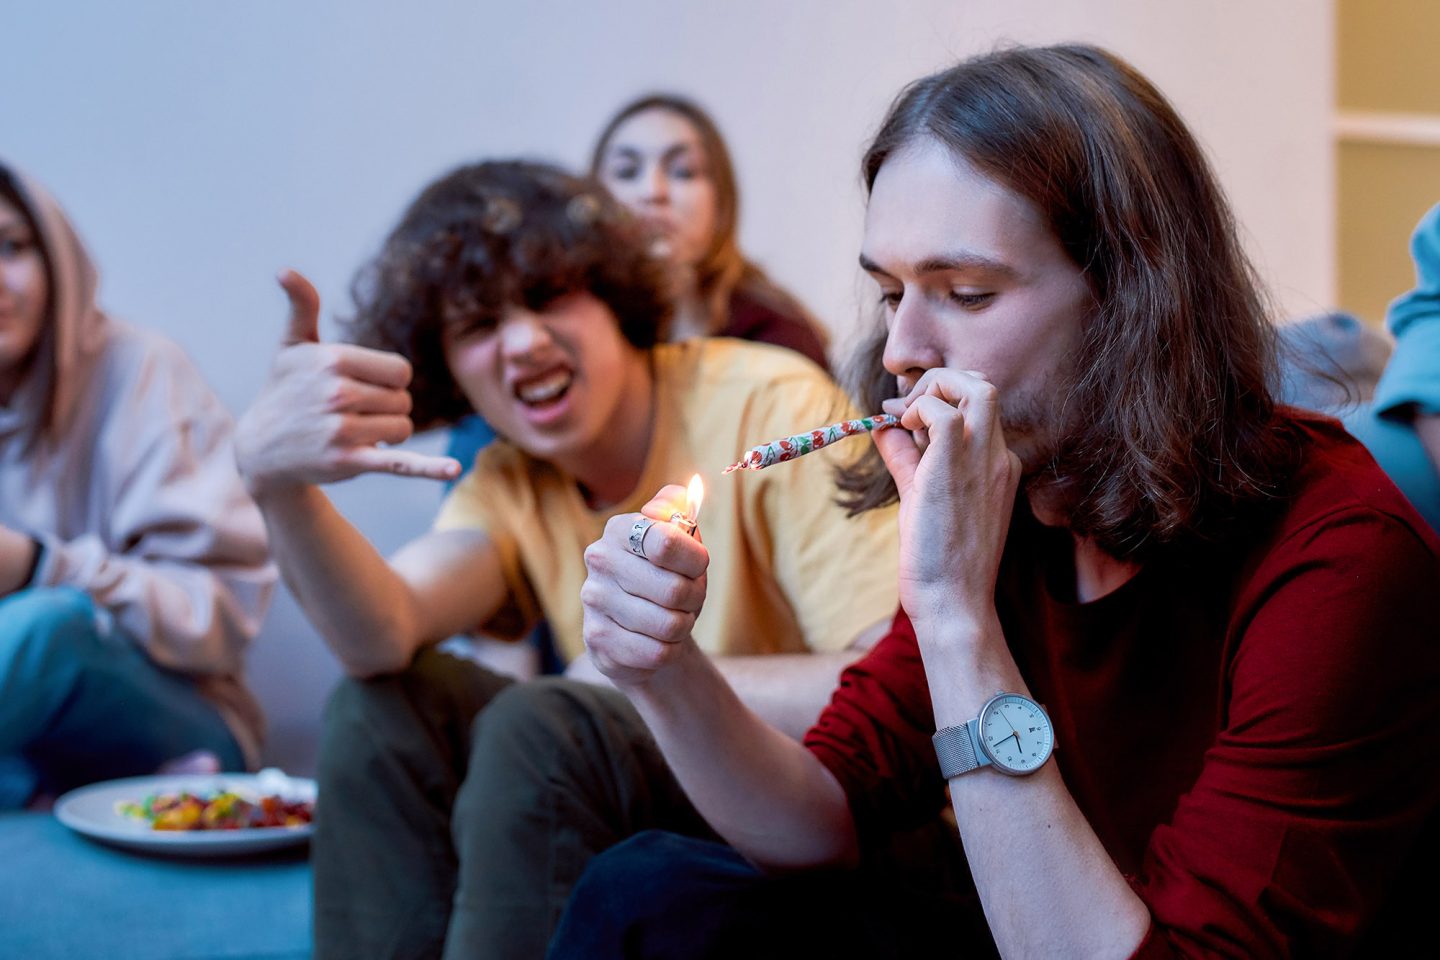 تدخين الحشيش في سن المراهقة قد يؤدي إلى زيادة خطر الإصابة بالاكتئاب